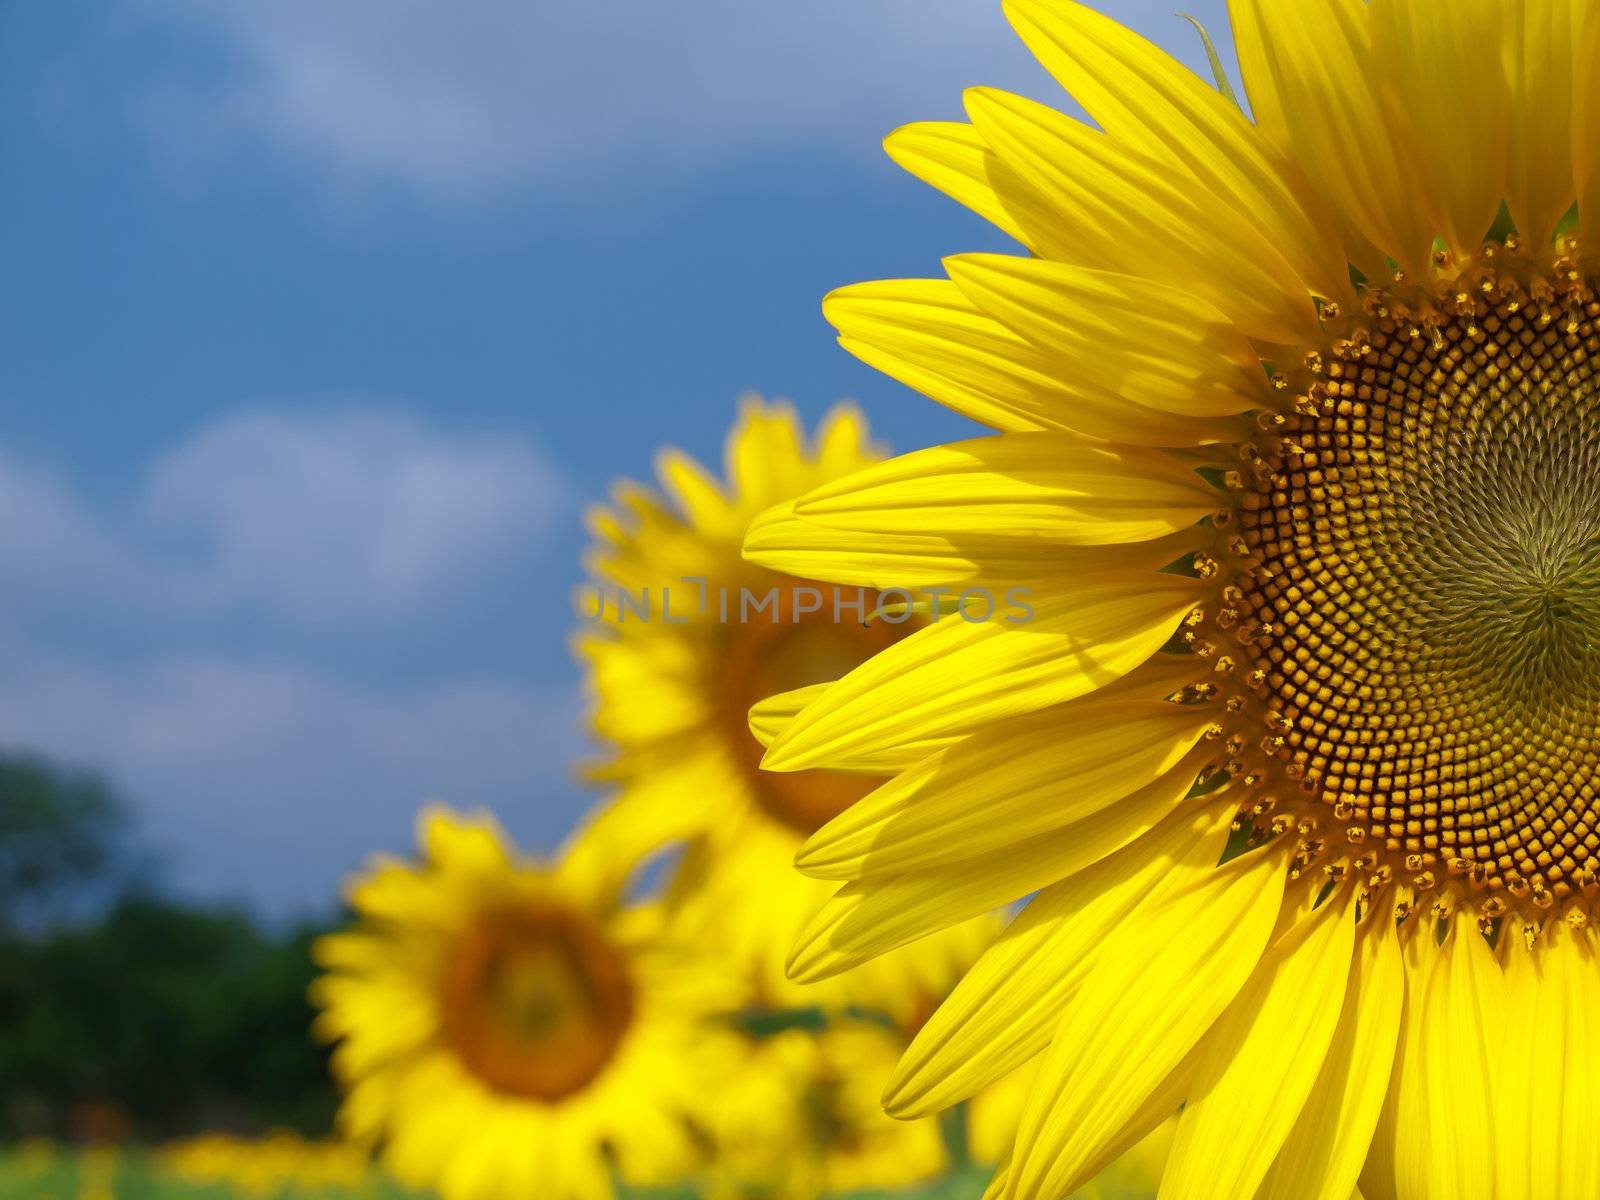 Sunflower field by Exsodus